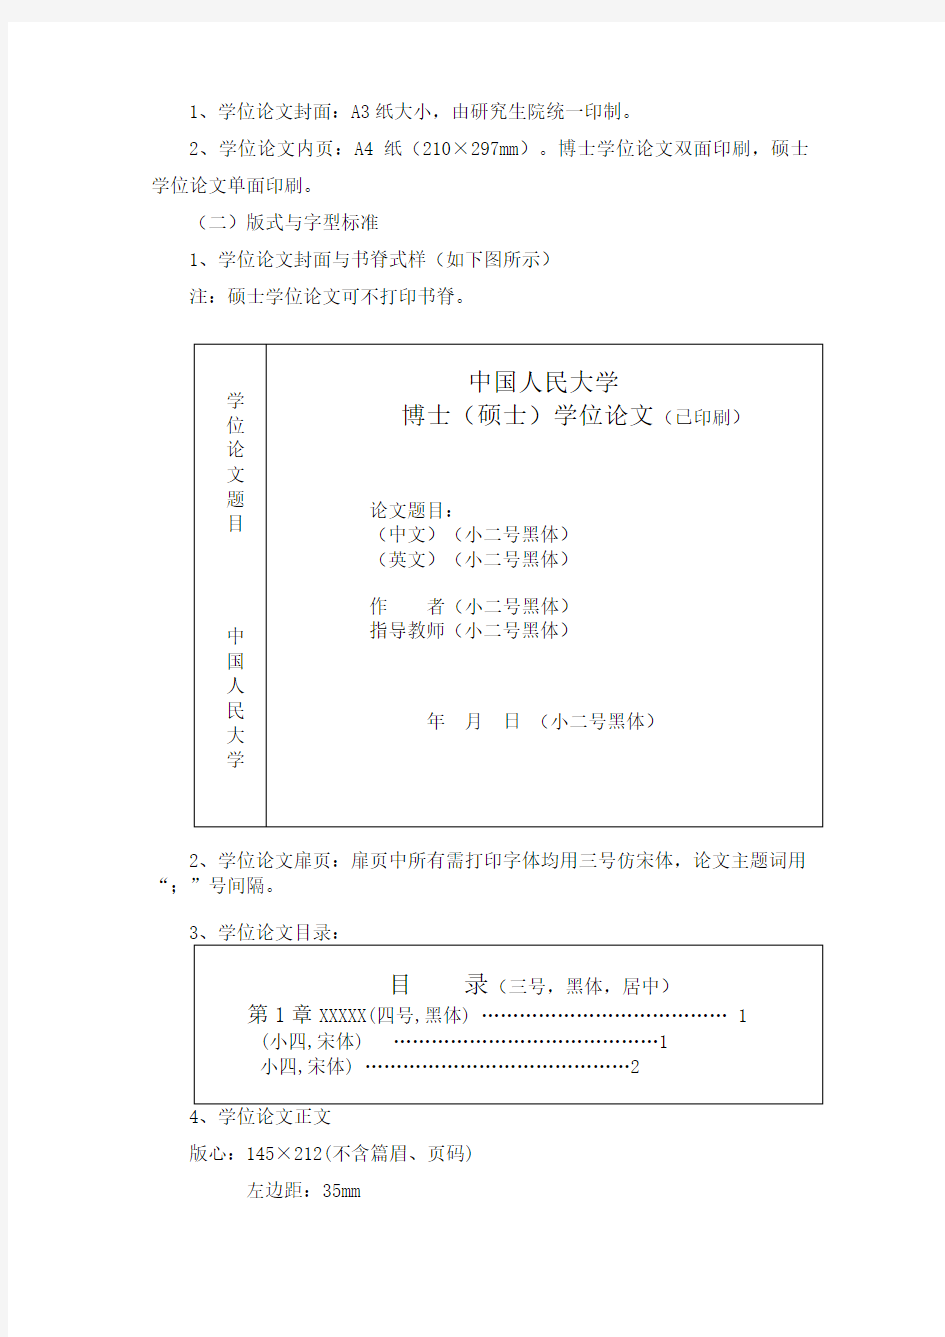 中国人民大学研究生学位论文及其摘要的撰写和印制要求